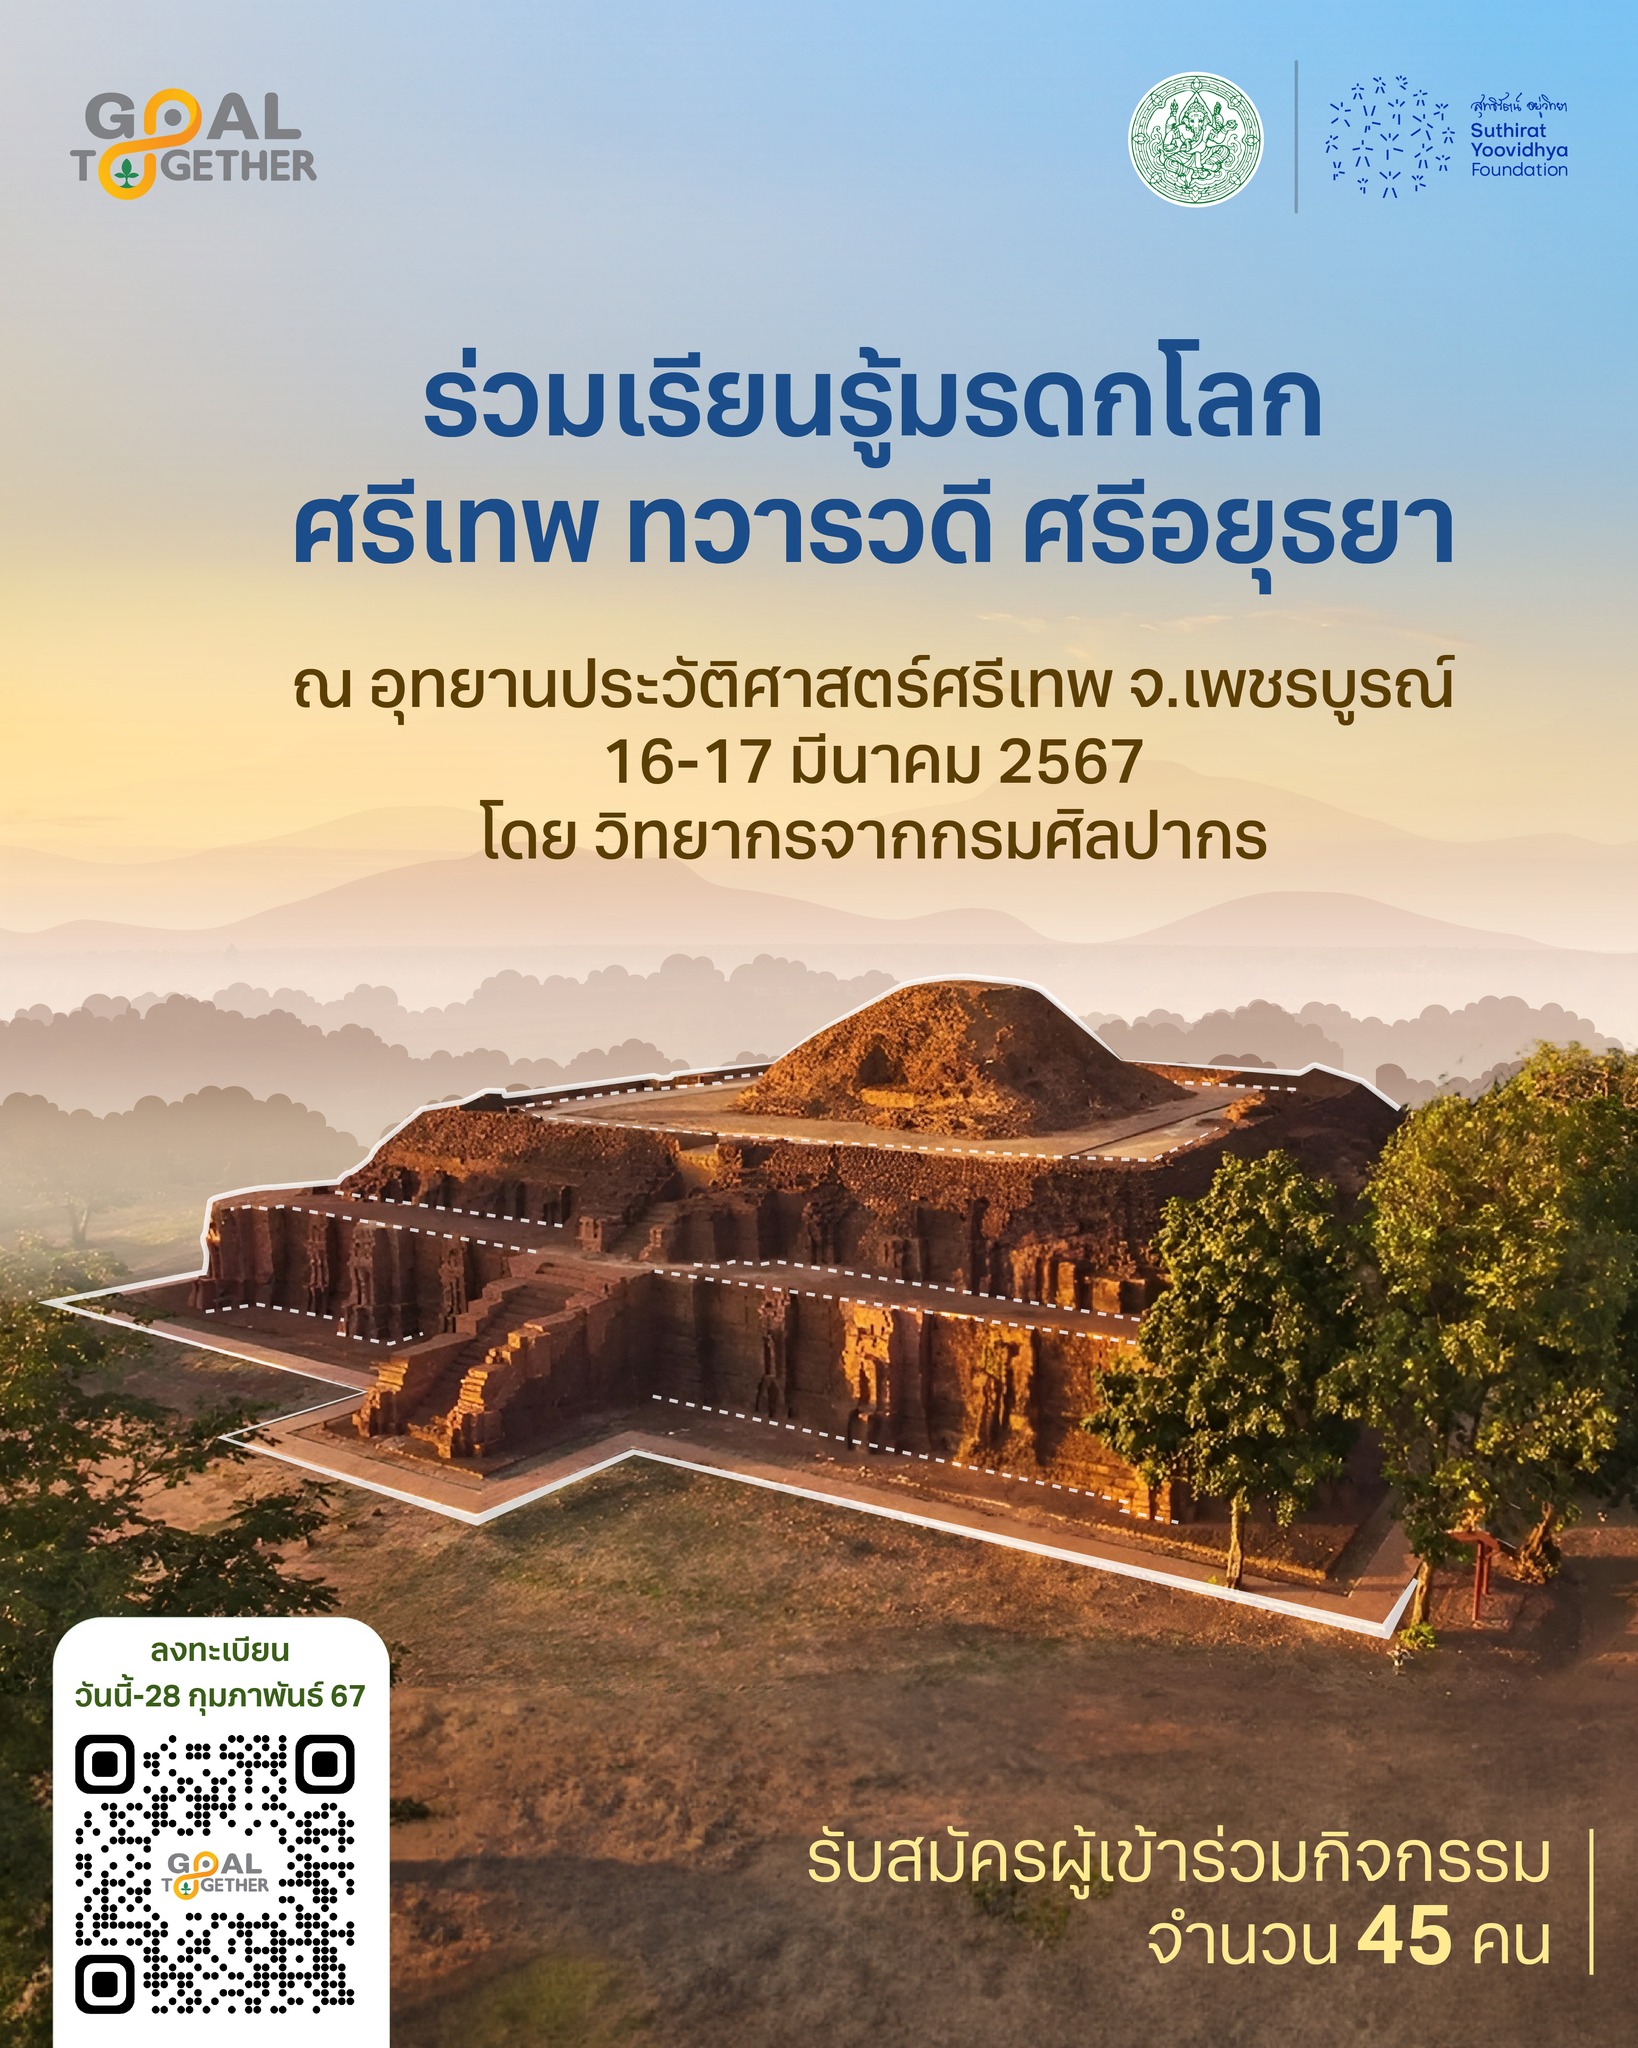 ชวนร่วมกิจกรรมเรียนรู้ประวัติศาสตร์และวัฒนธรรมไทย  ณ อุทยานประวัติศาสตร์ศรีเทพ จังหวัดเพชรบูรณ์ วันที่ 16-17 มีนาคม 256